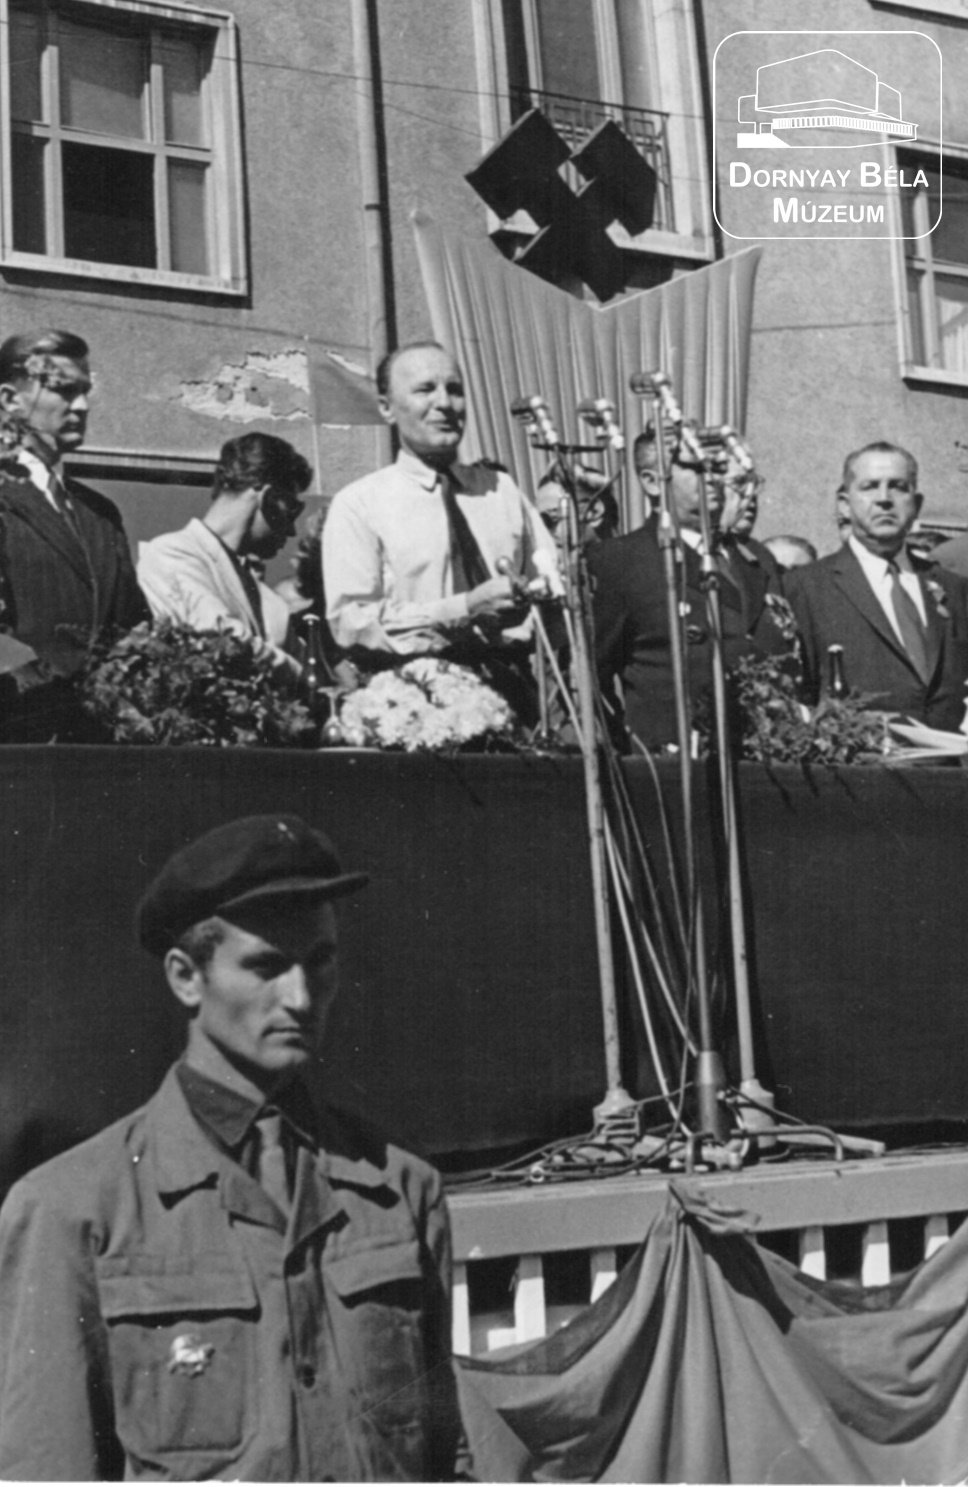 Salgótarján, 1960-as Bányásznap, Kádár János, ünnepi szónok. (Dornyay Béla Múzeum, Salgótarján CC BY-NC-SA)